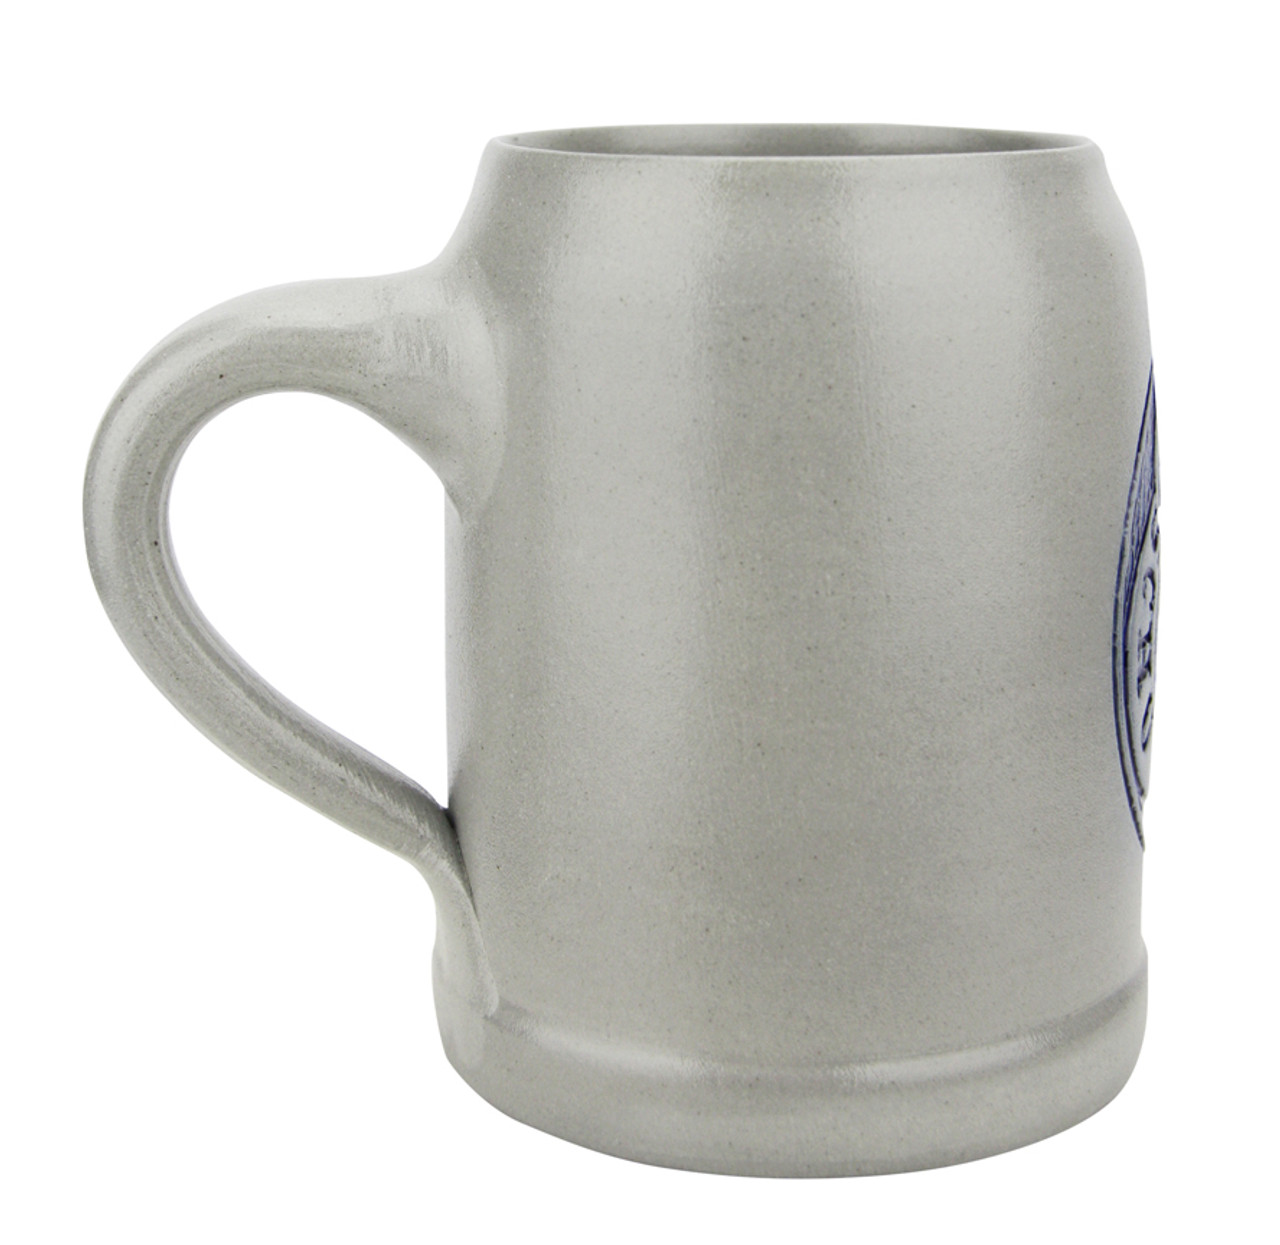 Hofbrauhaus HB Schutzmarke 0.5 Liter Salt Glaze Stoneware Beer Mug